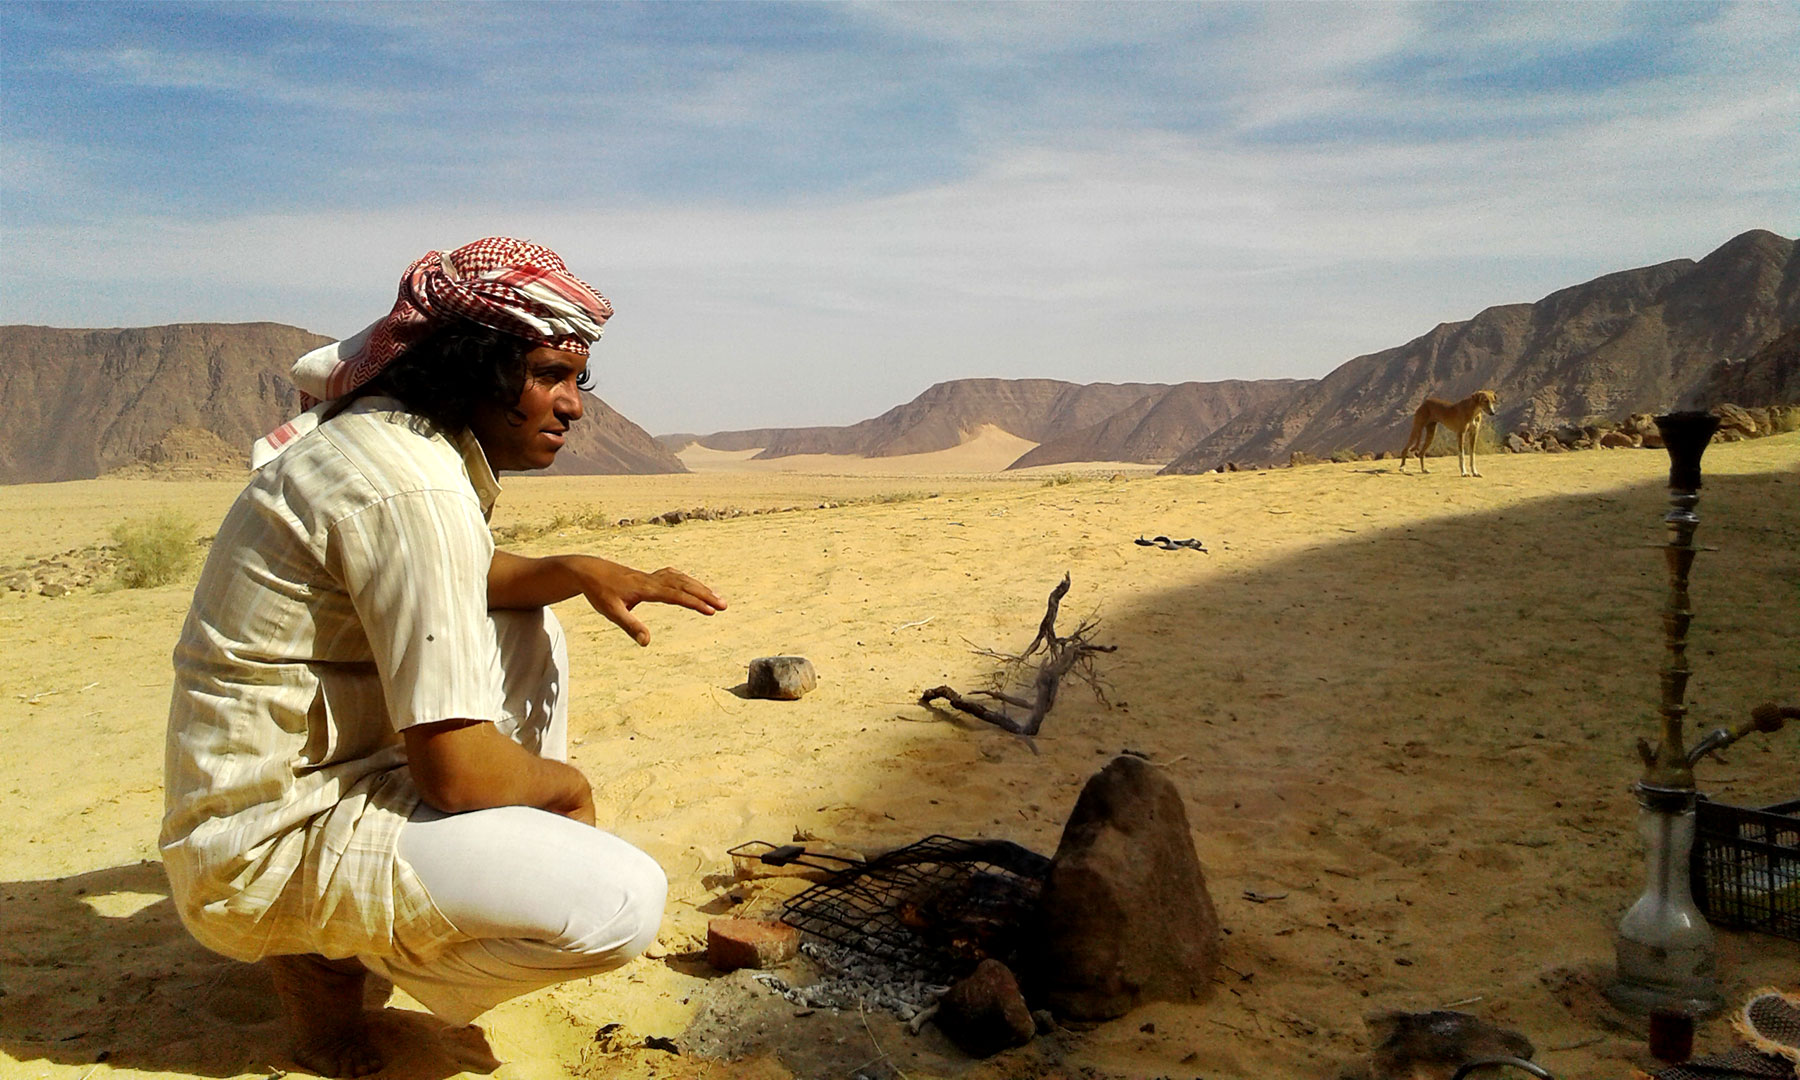 Meet the nomads in Jordan